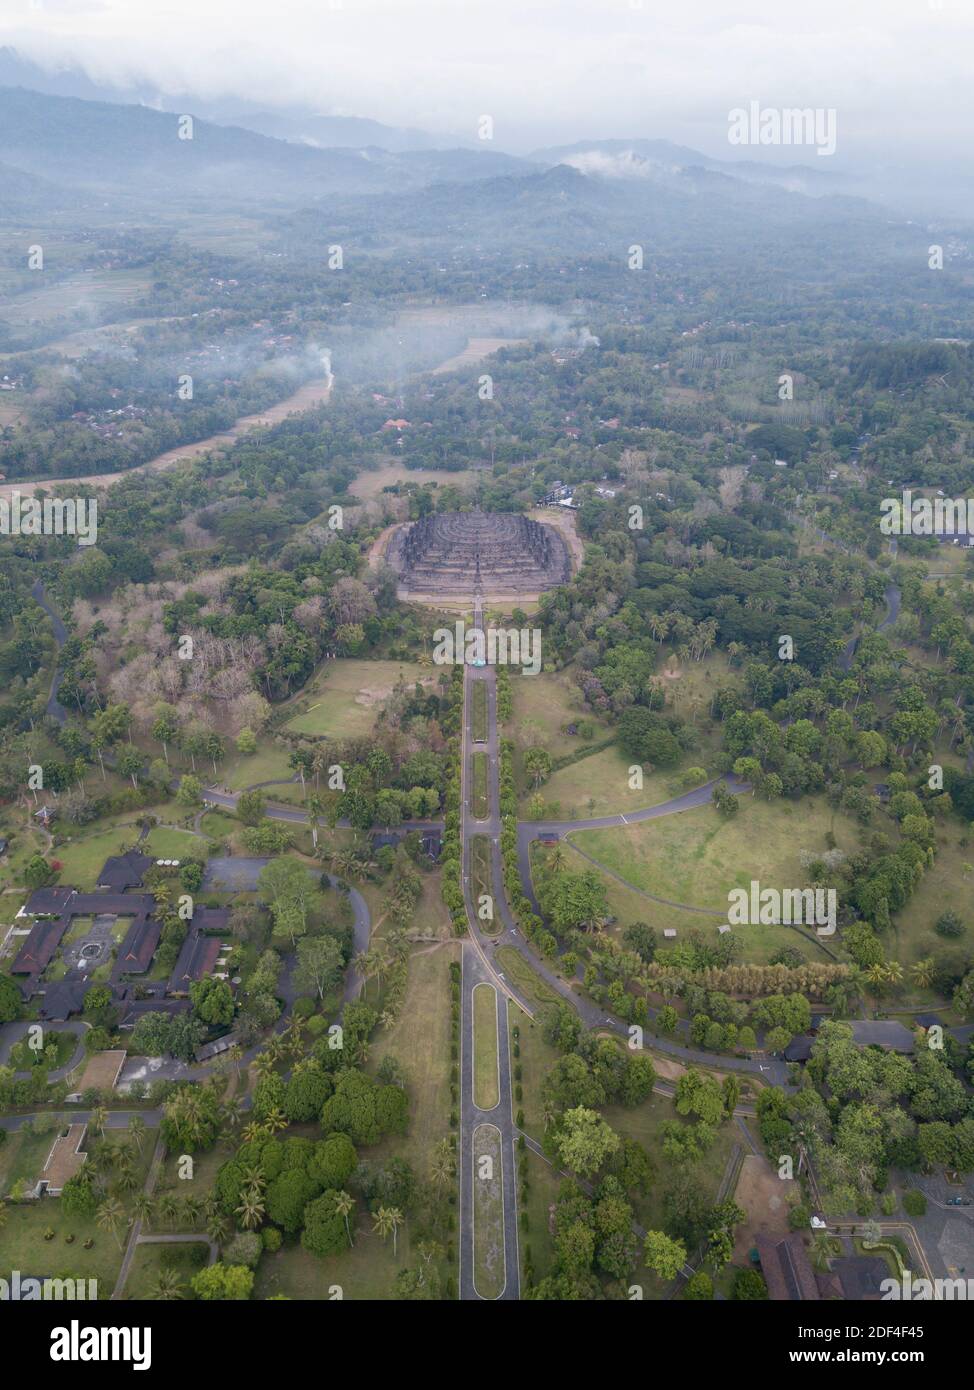 Vue aérienne du temple Borobudur, Yogyakarta. Le plus grand temple bouddhiste d'Indonésie. Destinations touristiques religieuses et historiques Banque D'Images